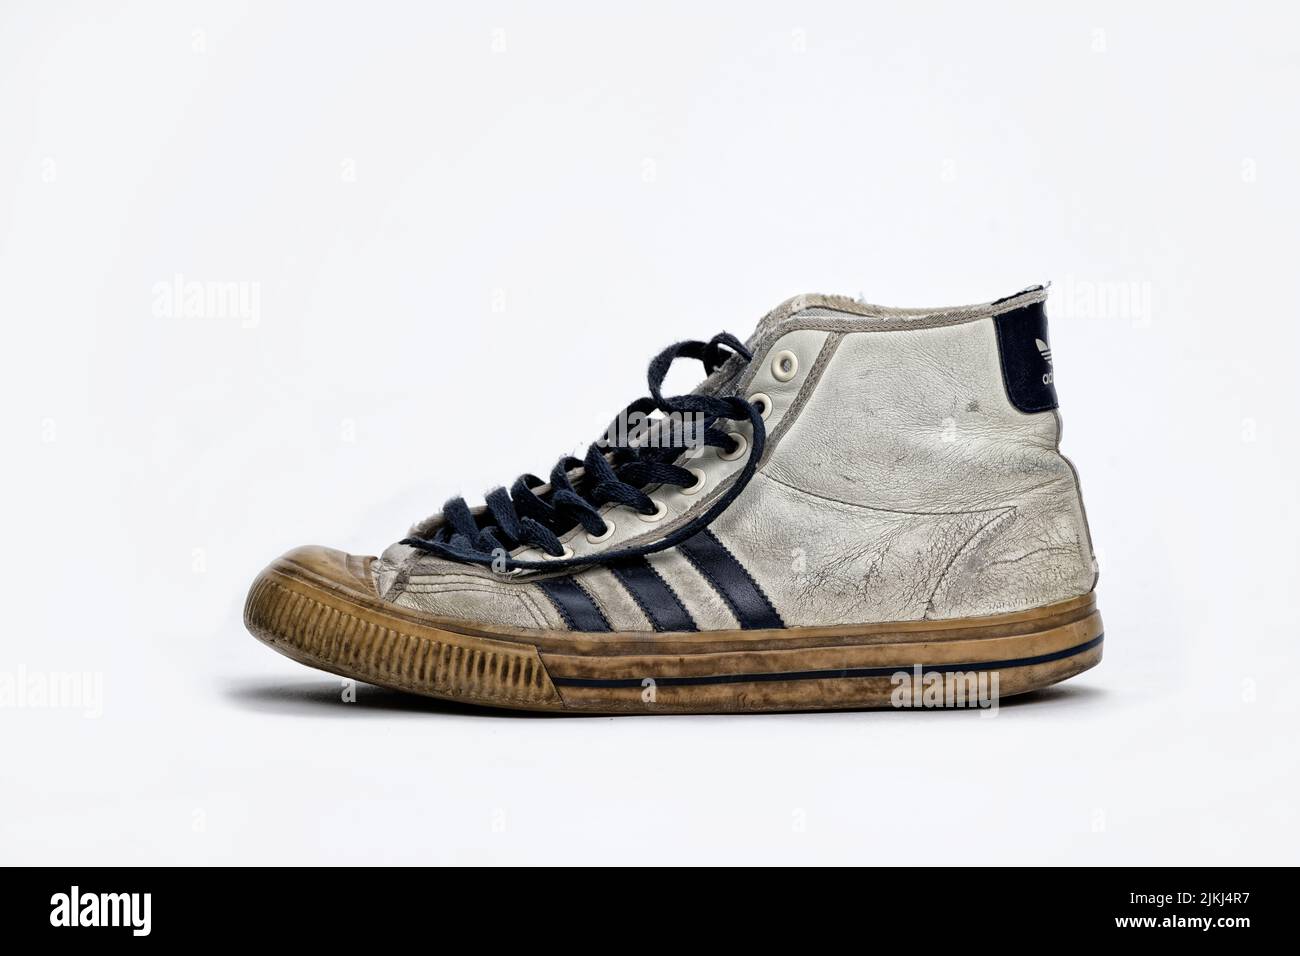 overeenkomst Altijd Injectie Der Vintage alte Leder Adidas Sneaker auf weißem Hintergrund  Stockfotografie - Alamy